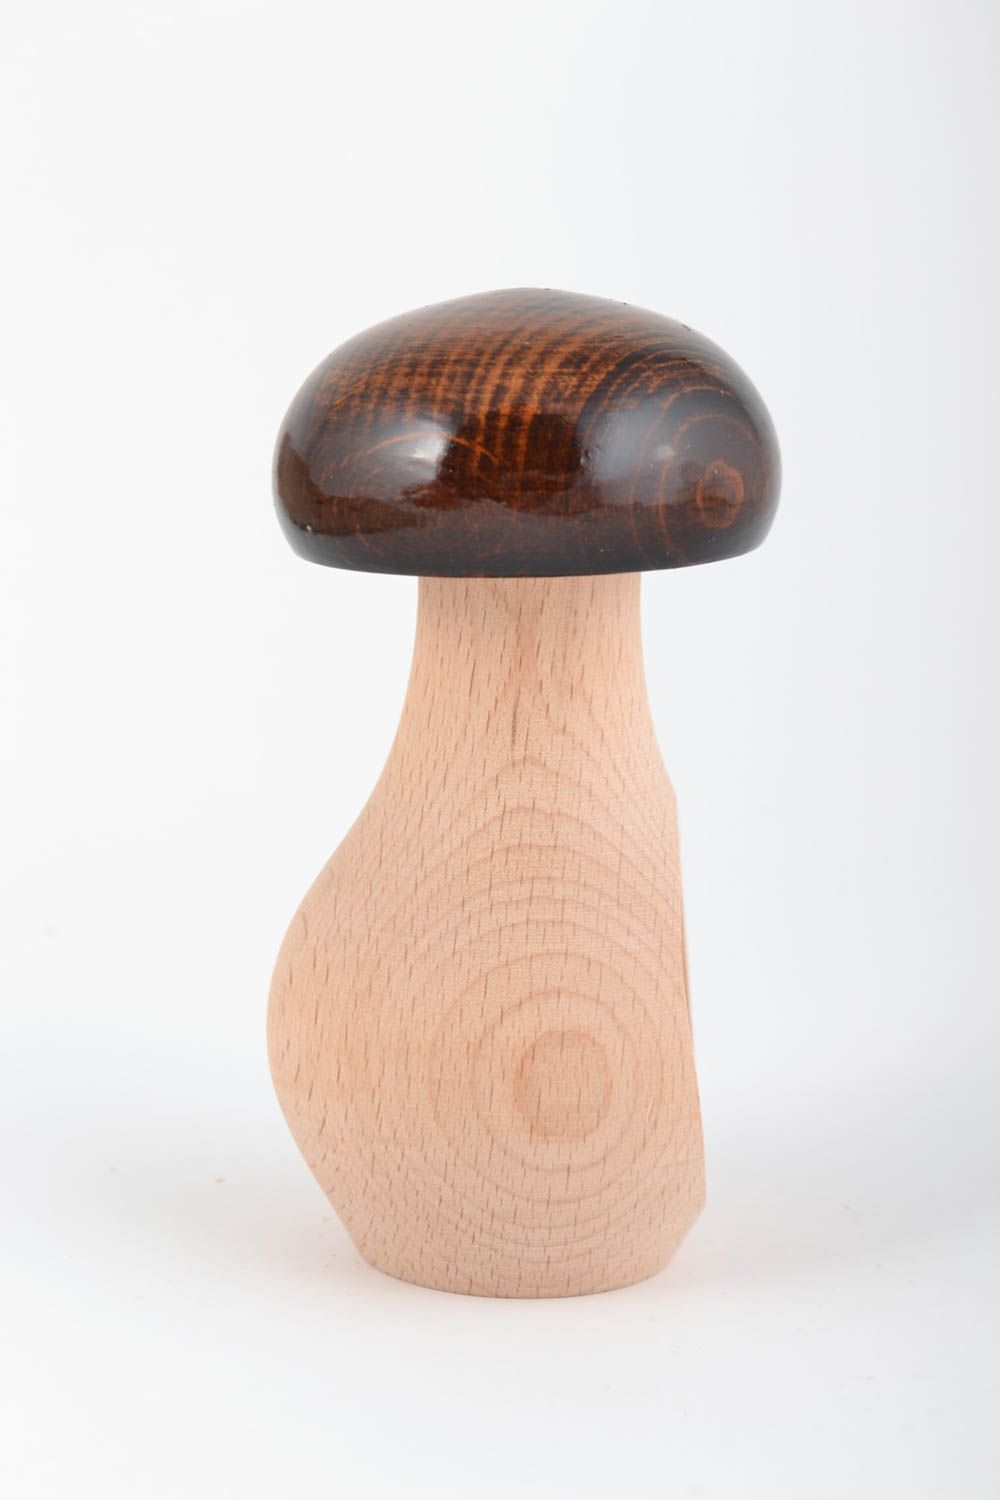 Деревянный орехокол лакированный гриб ручной работы красивый в эко-стиле фото 3